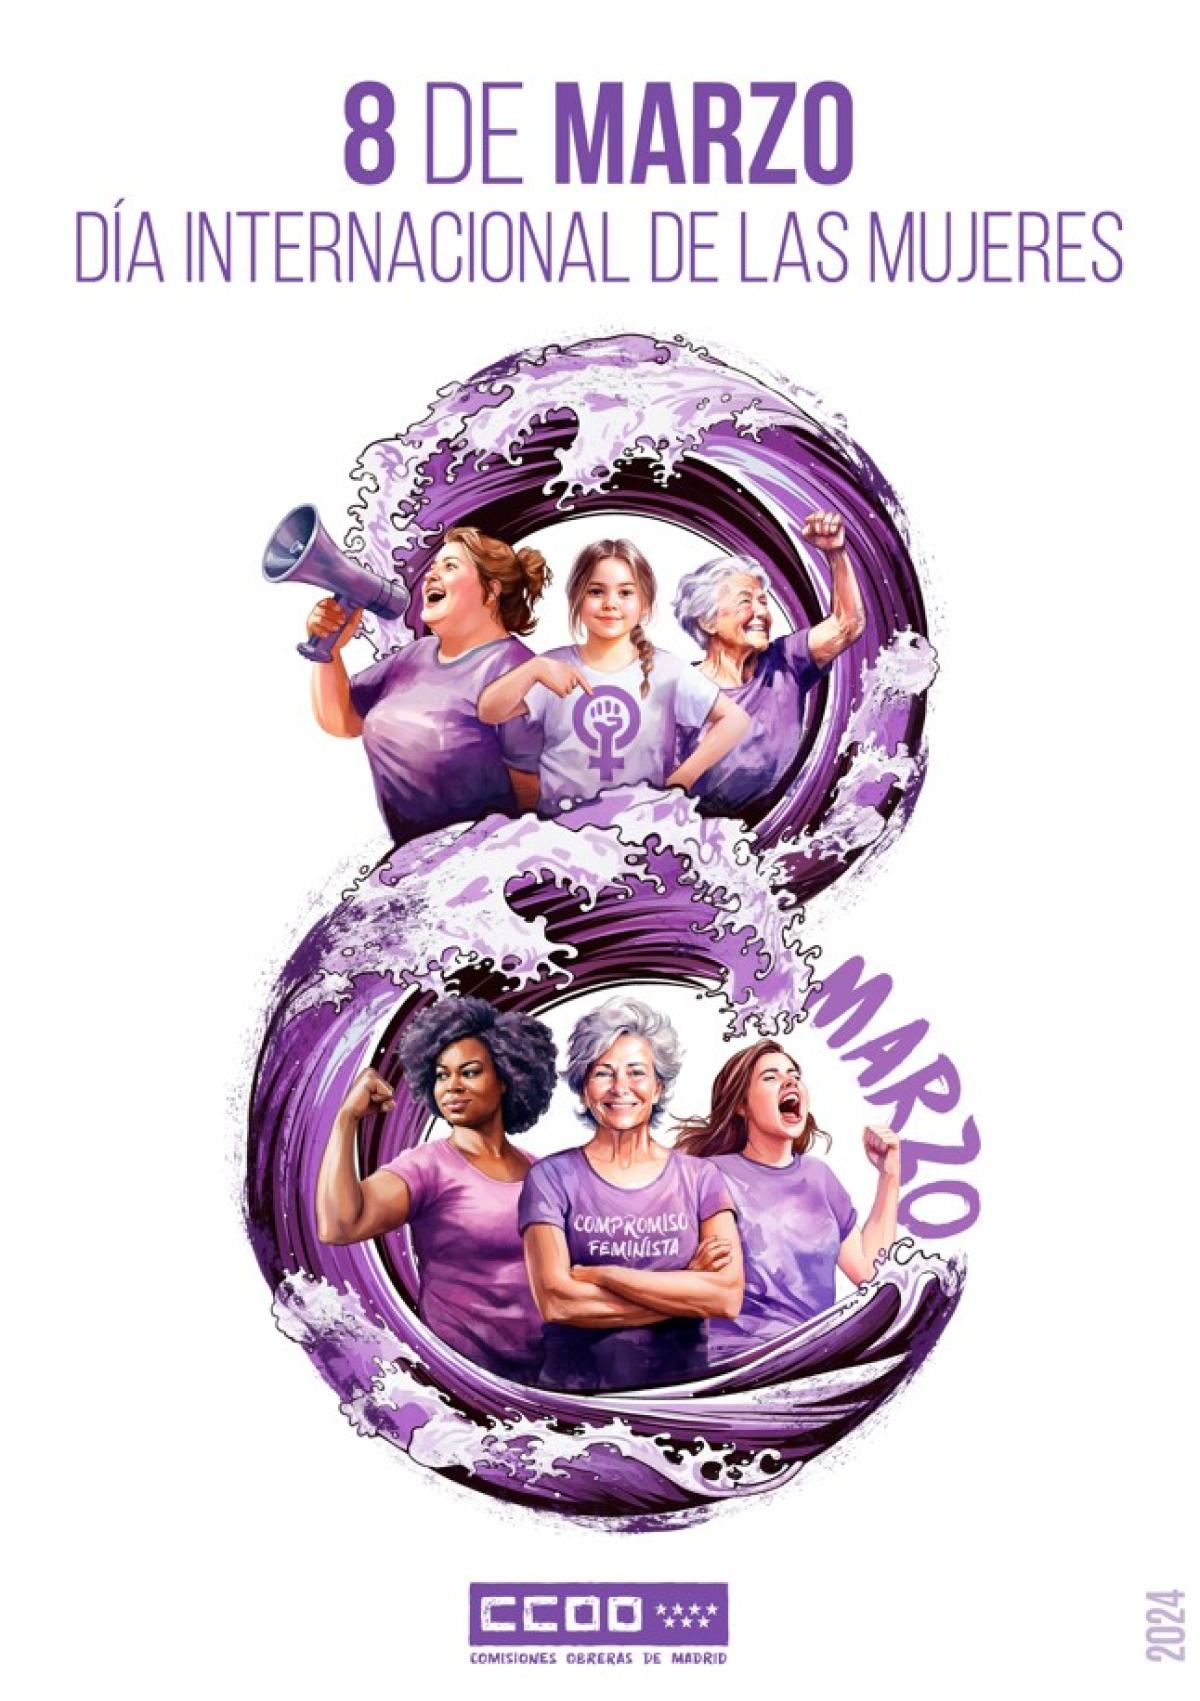 8 de marzo, Da Internacional de las Mujeres